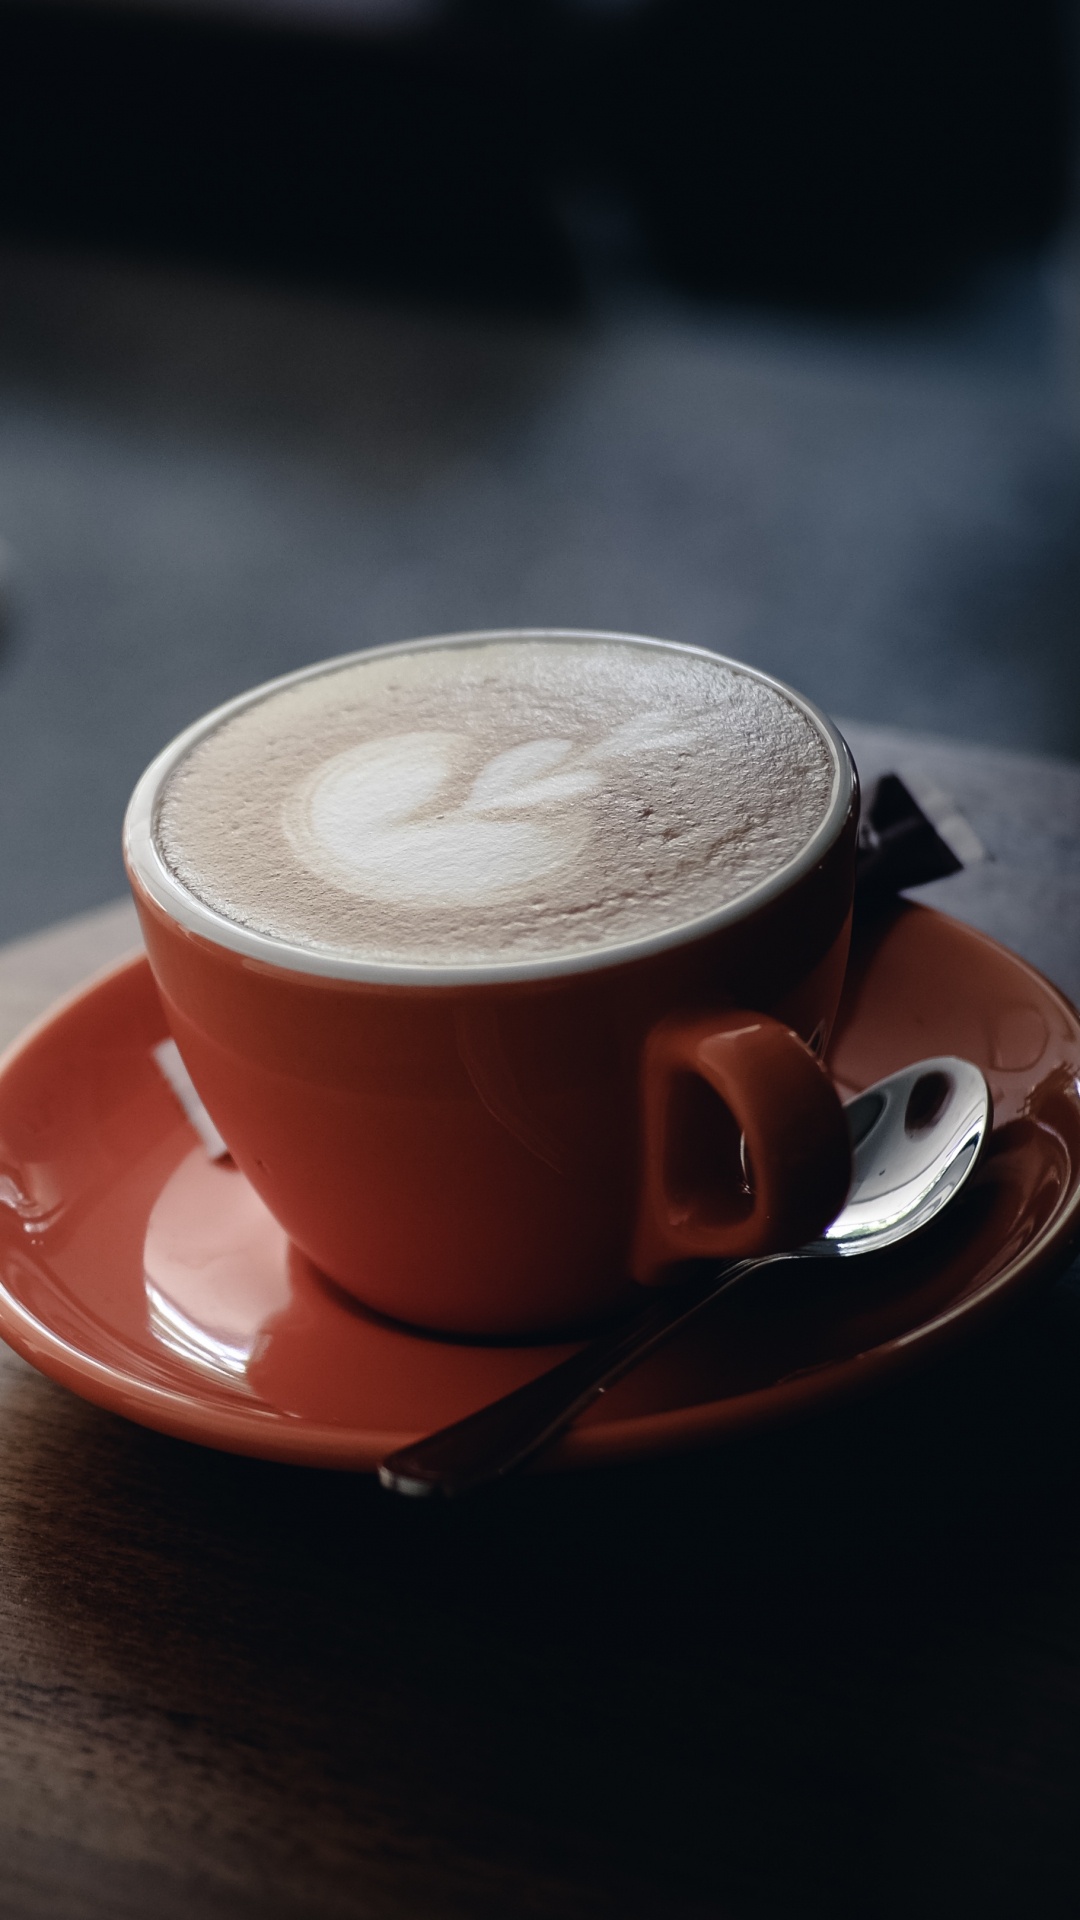 卡布奇诺咖啡, 拿铁艺术, 咖啡杯, 拿铁咖啡, Caff玛奇雅朵咖啡 壁纸 1080x1920 允许